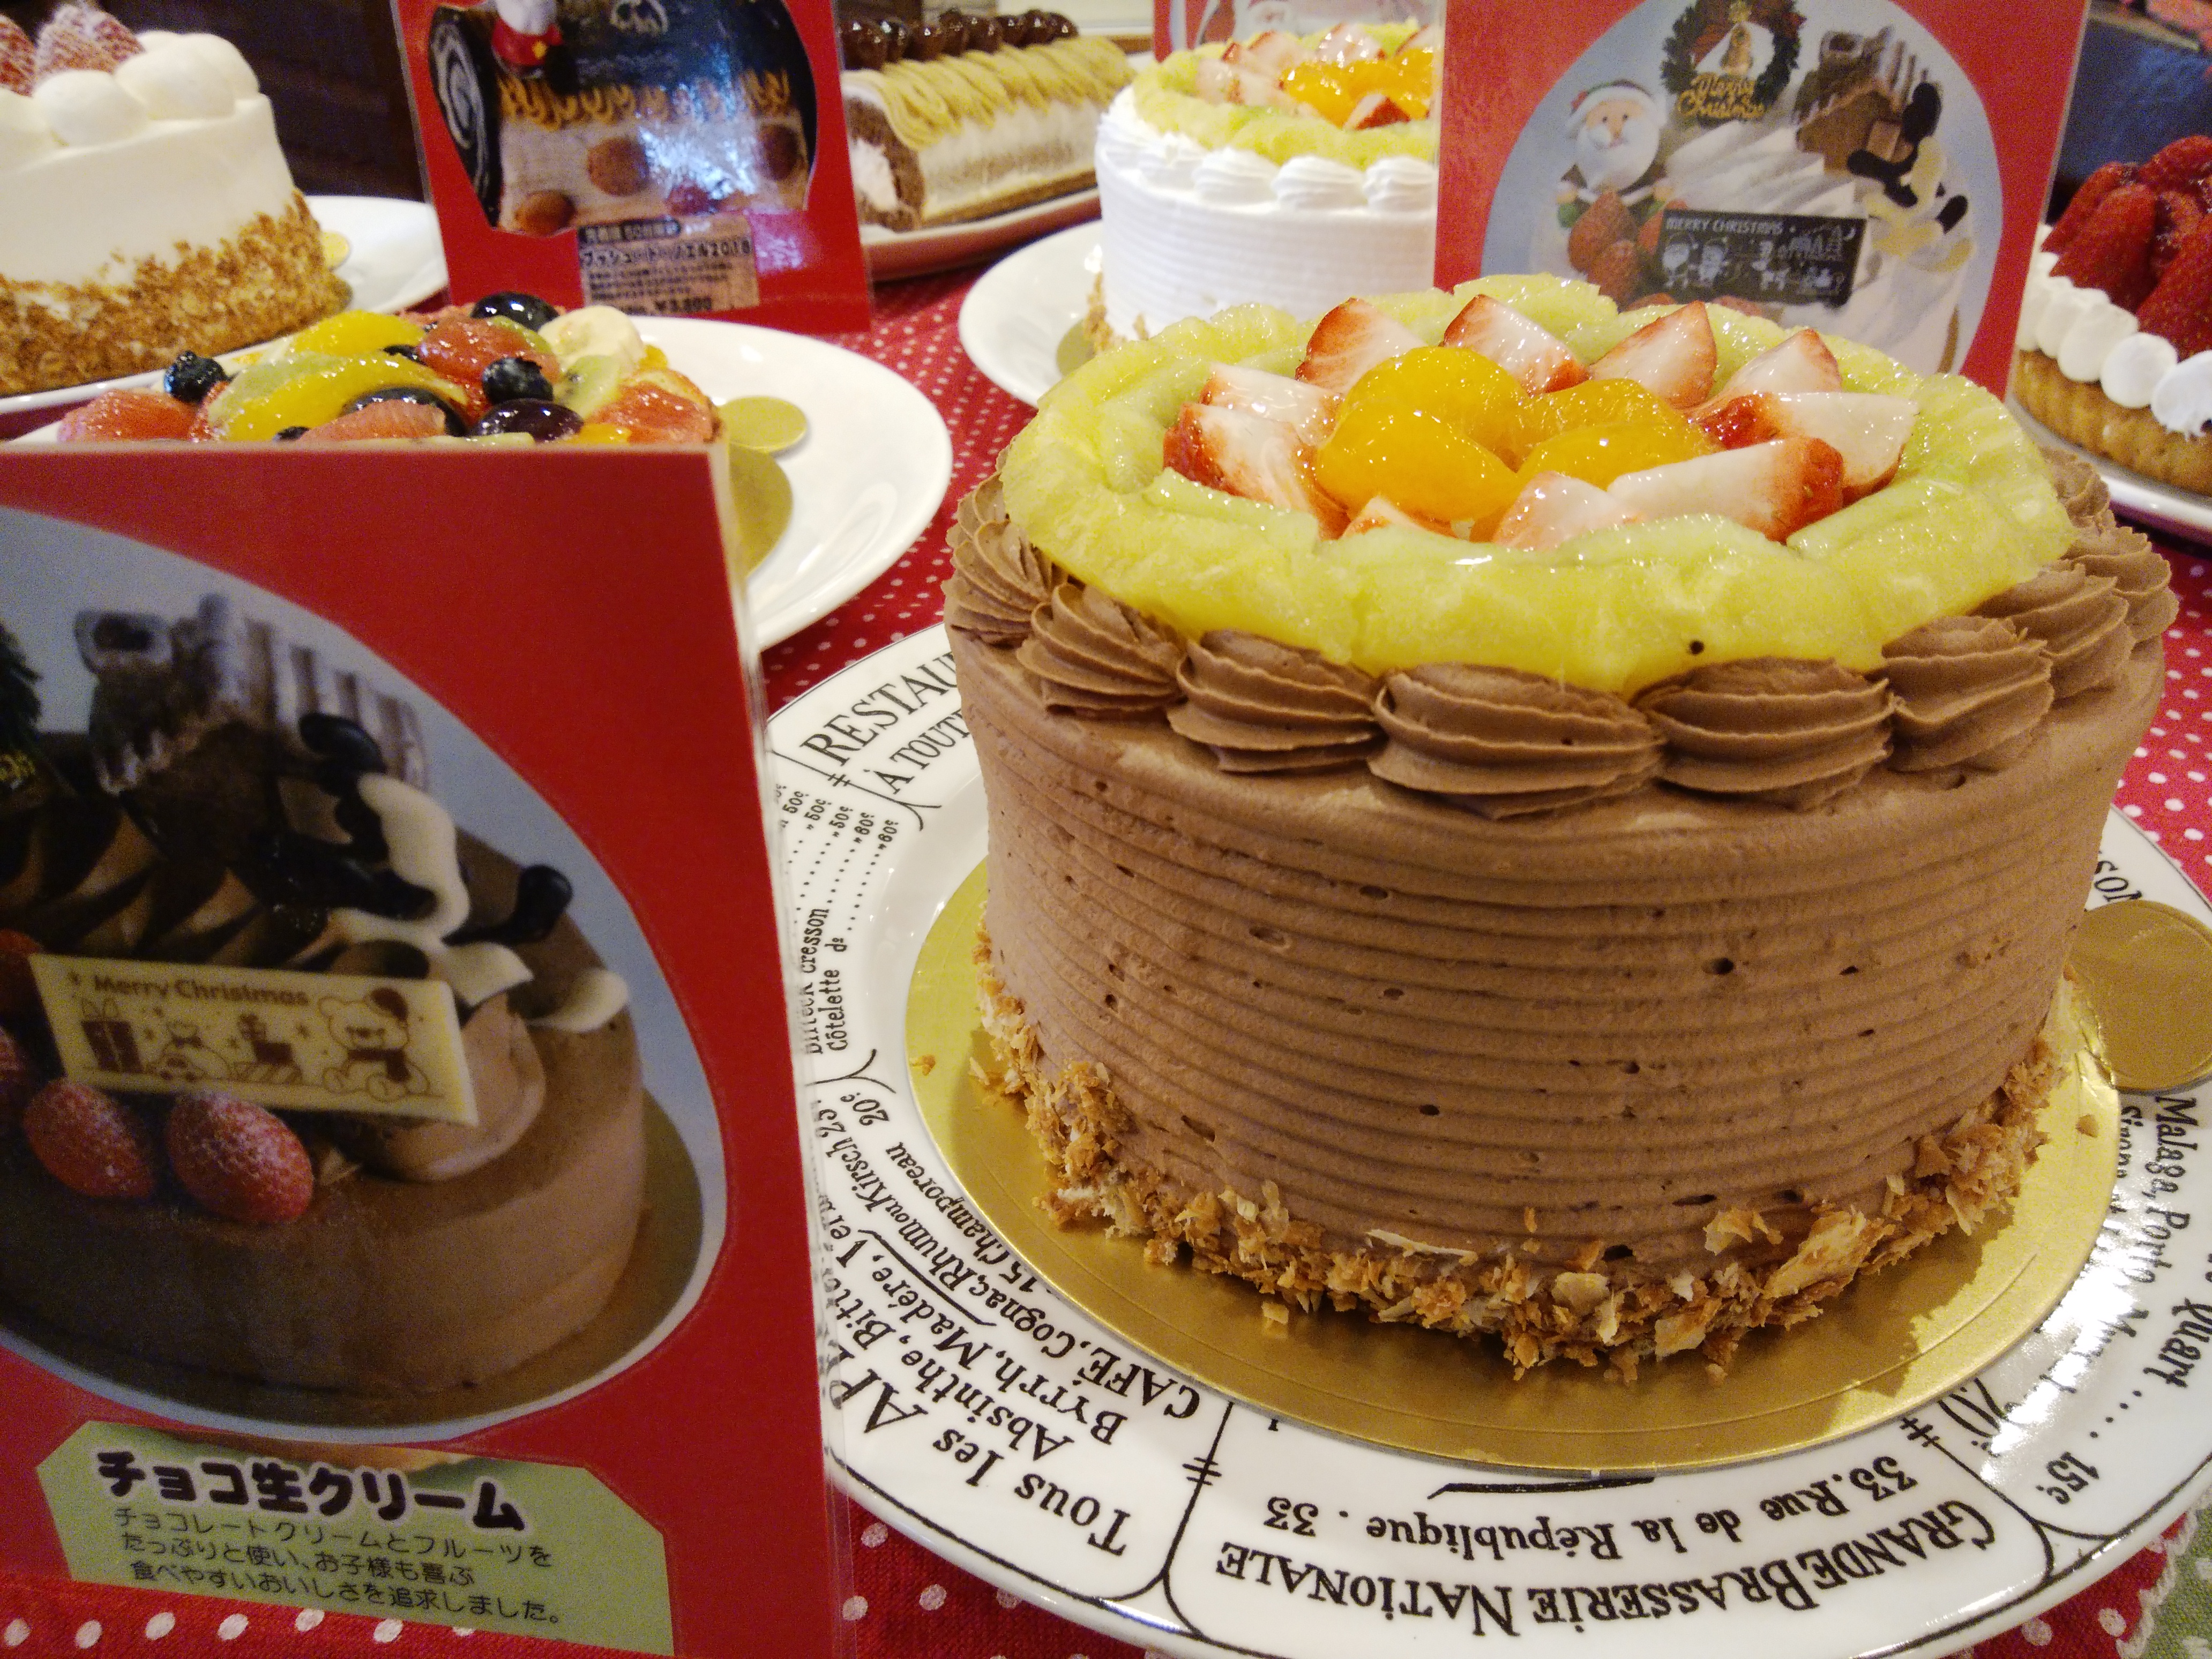 ケーキハウス マルフジ 小松市 三度の飯よりケーキ好き 三重県にもっとケーキバイキングを